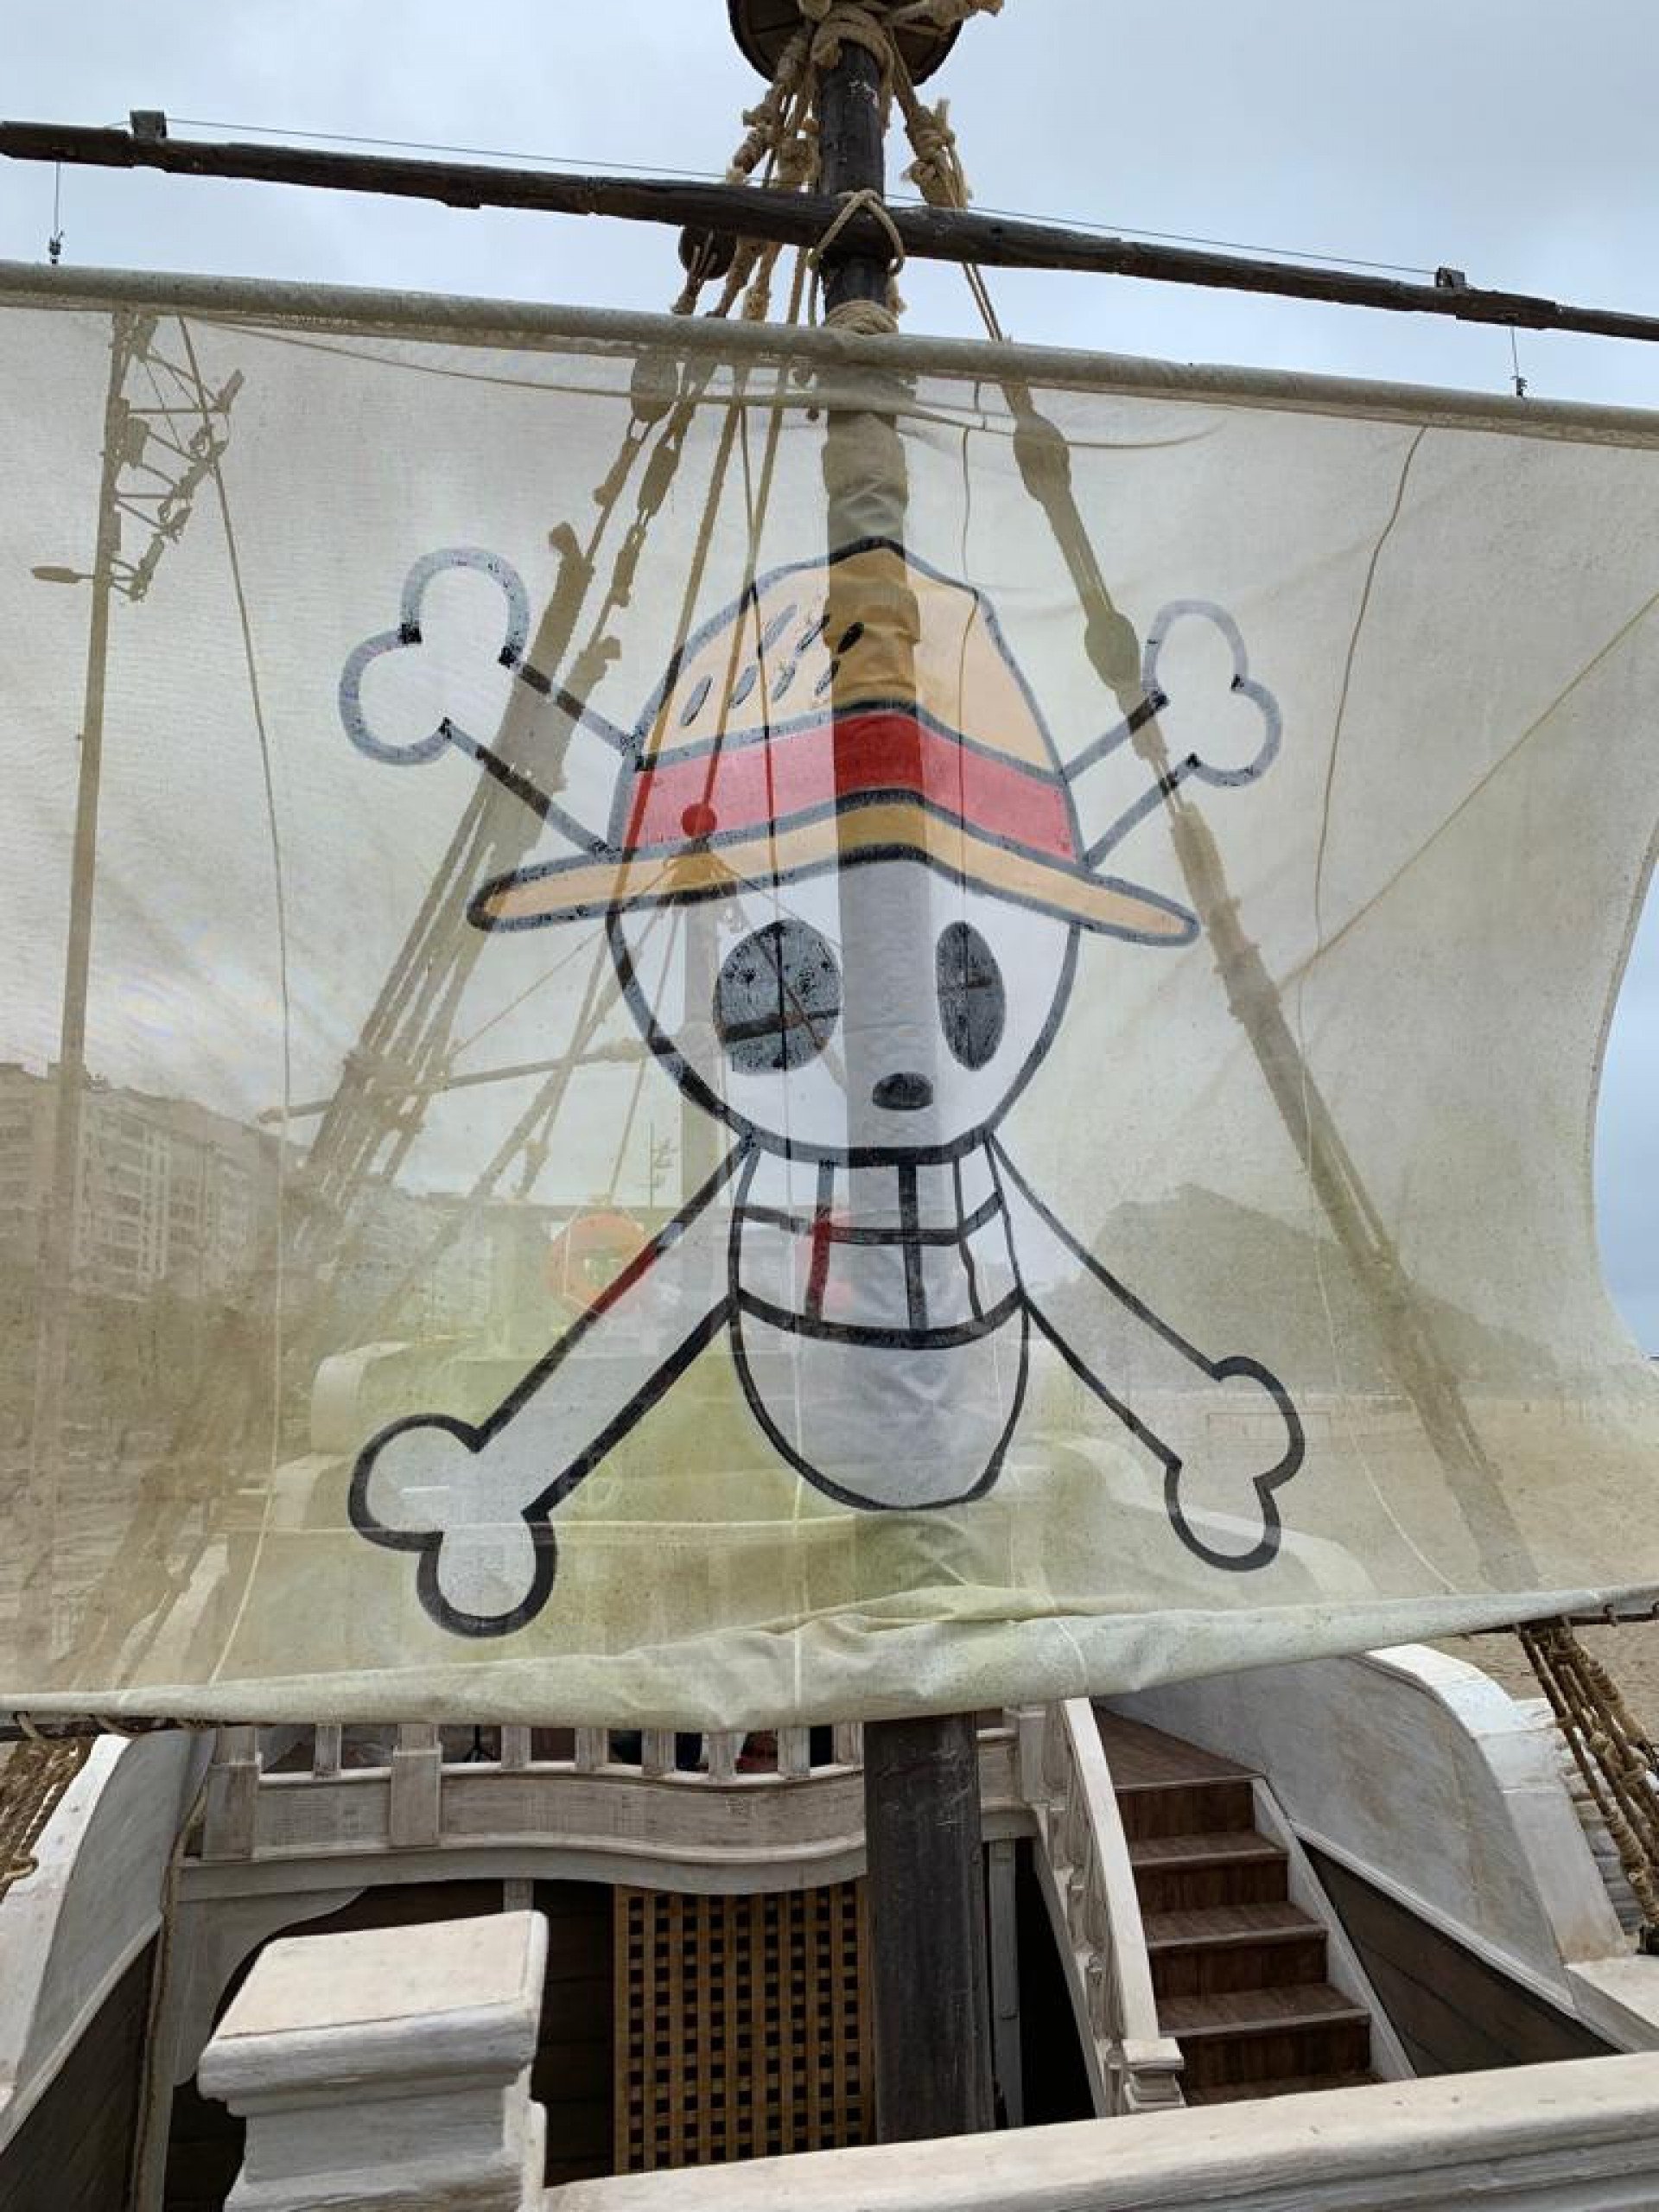 Veja o barco Going Merry de One Piece em Copacabana por dentro - Mix de  Séries